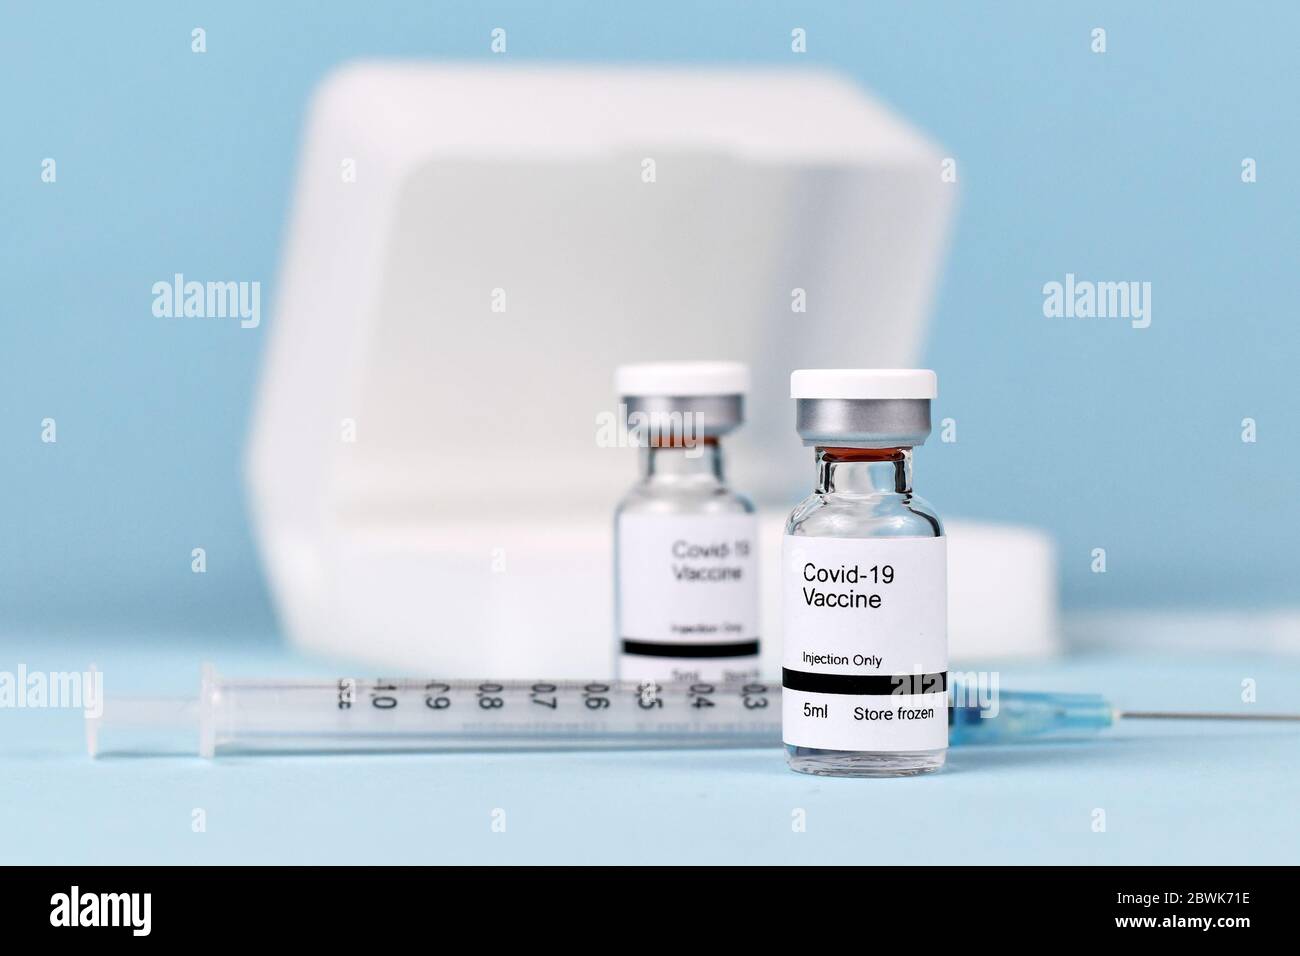 Vaccin contre le coronavirus concept avec deux flacons de petite taille avec le texte « vaccin Covid-19 » avec seringue et étui de stockage sur fond bleu flou Banque D'Images